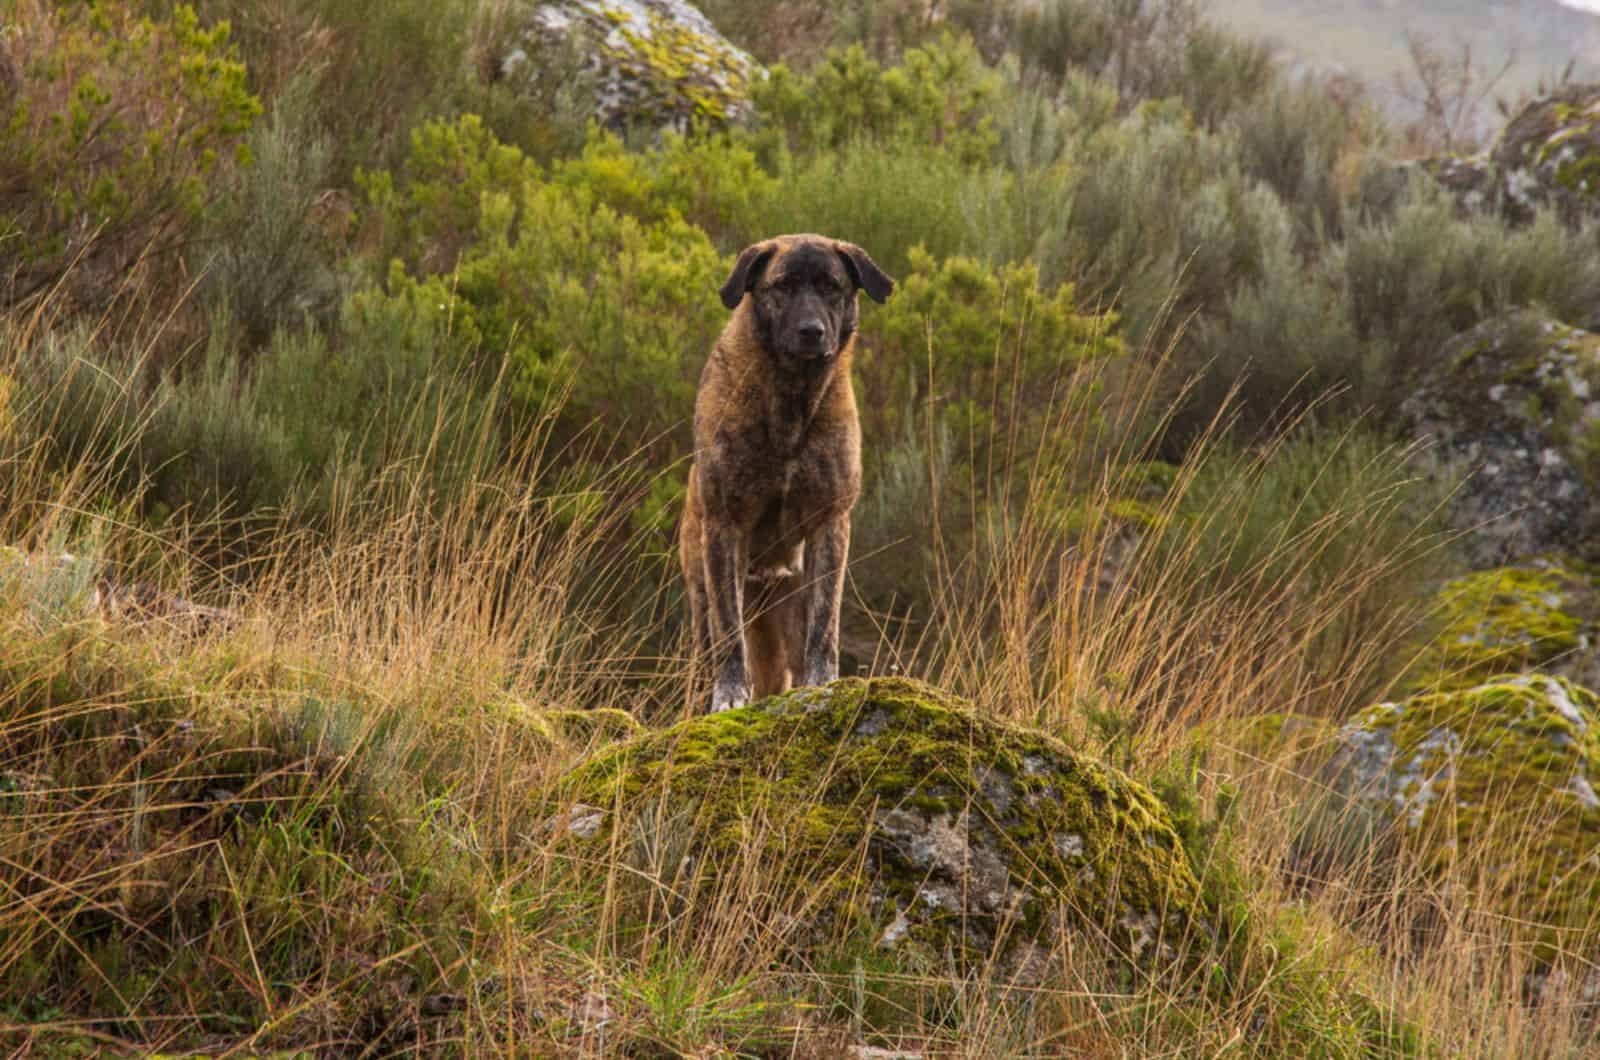 estrela mountain dog in nature